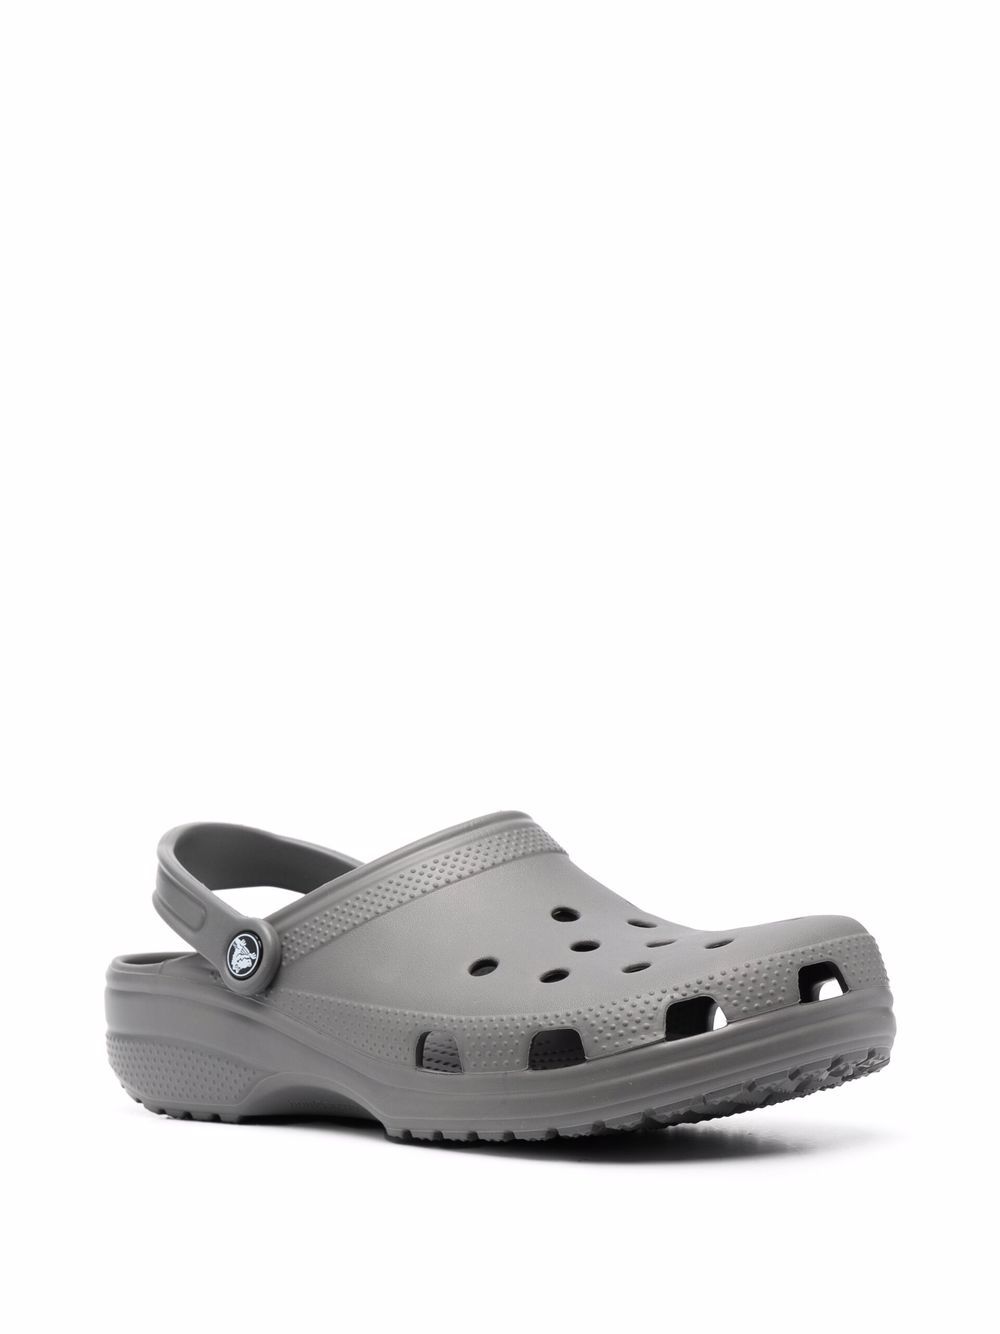 фото Crocs массивные сандалии